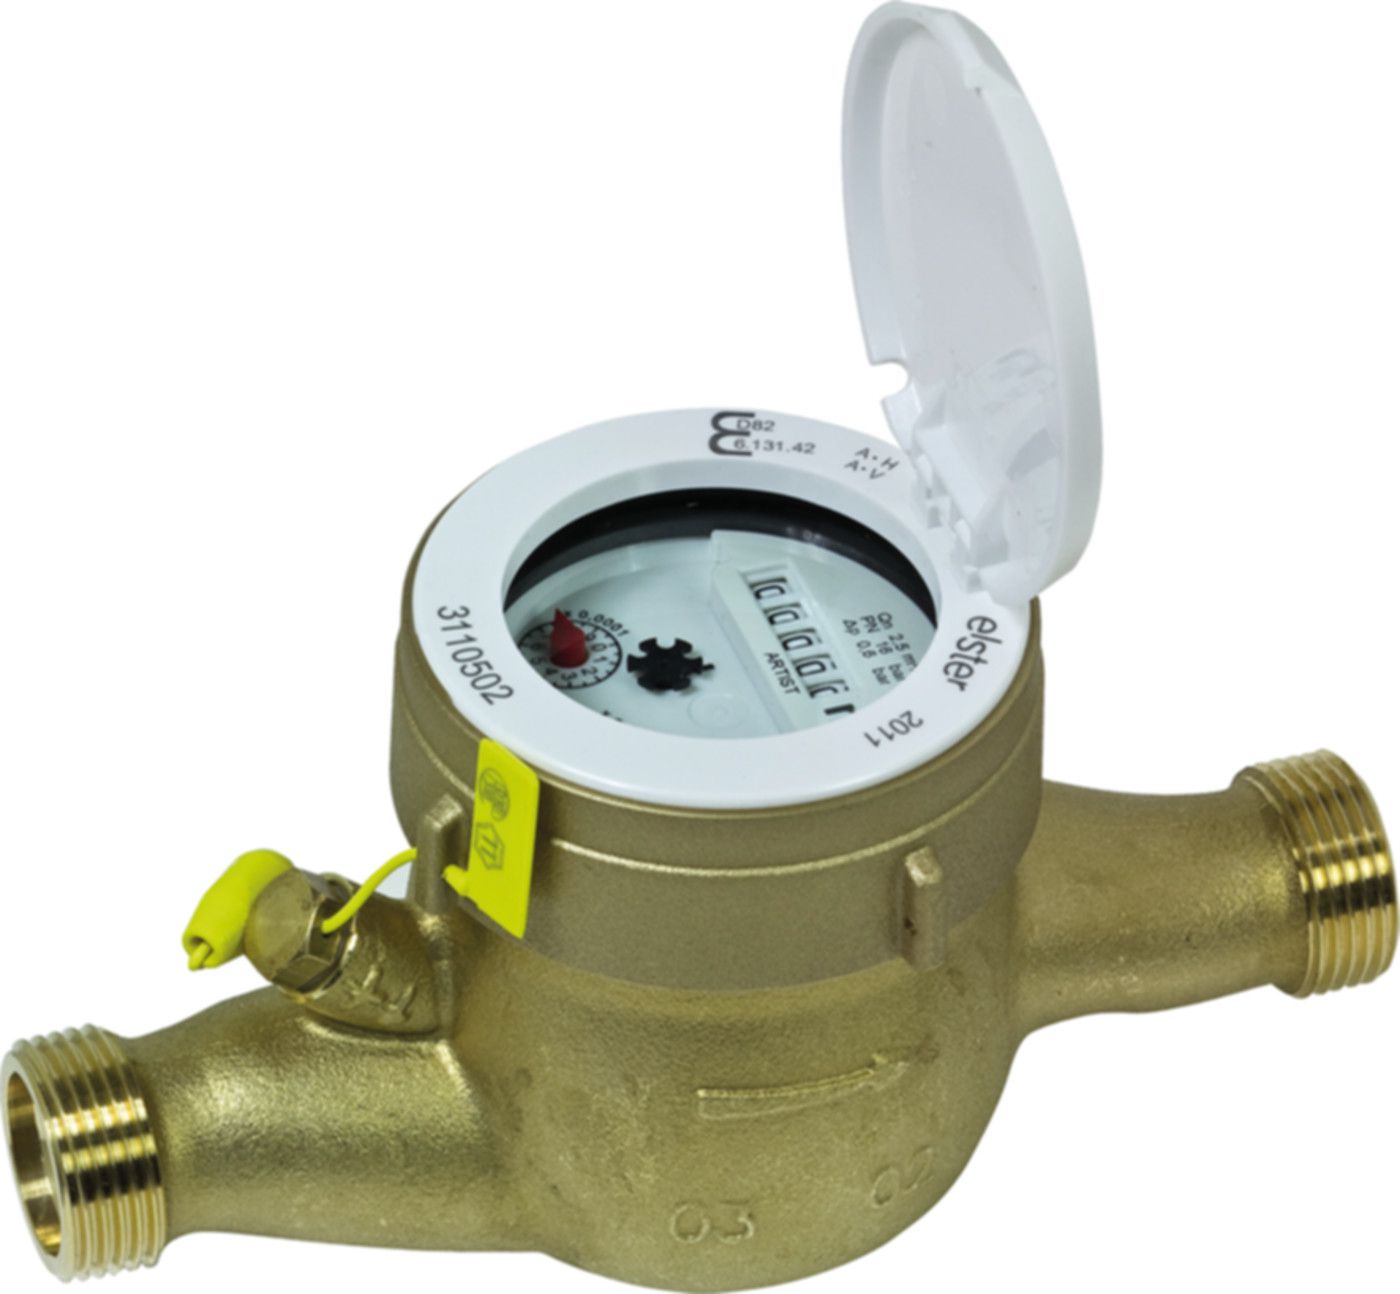 Hauswasserzähler warm S 6.0 m3/h L = 150 mm G 11/4" blombiert 16780 - ISTA - Wärme- / Wasserzähler